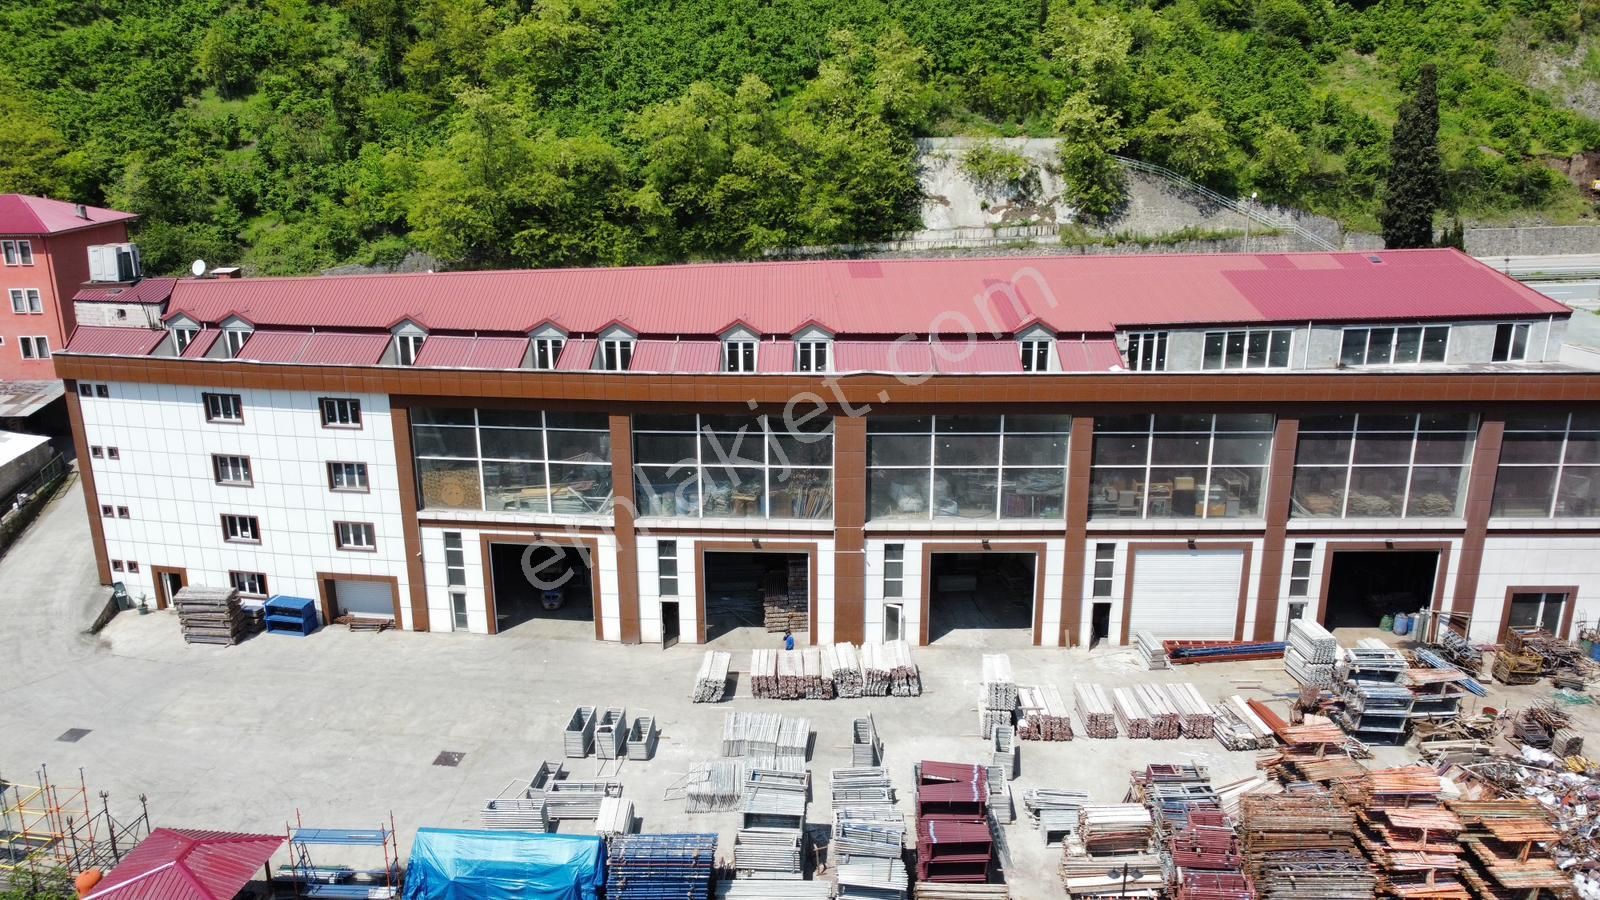 Ortahisar Kutlugün Satılık Dükkan & Mağaza  Trabzon Erzurum Yolu Üzeri Satılık Komple İş Yeri(DÜKKAN+OTEL)